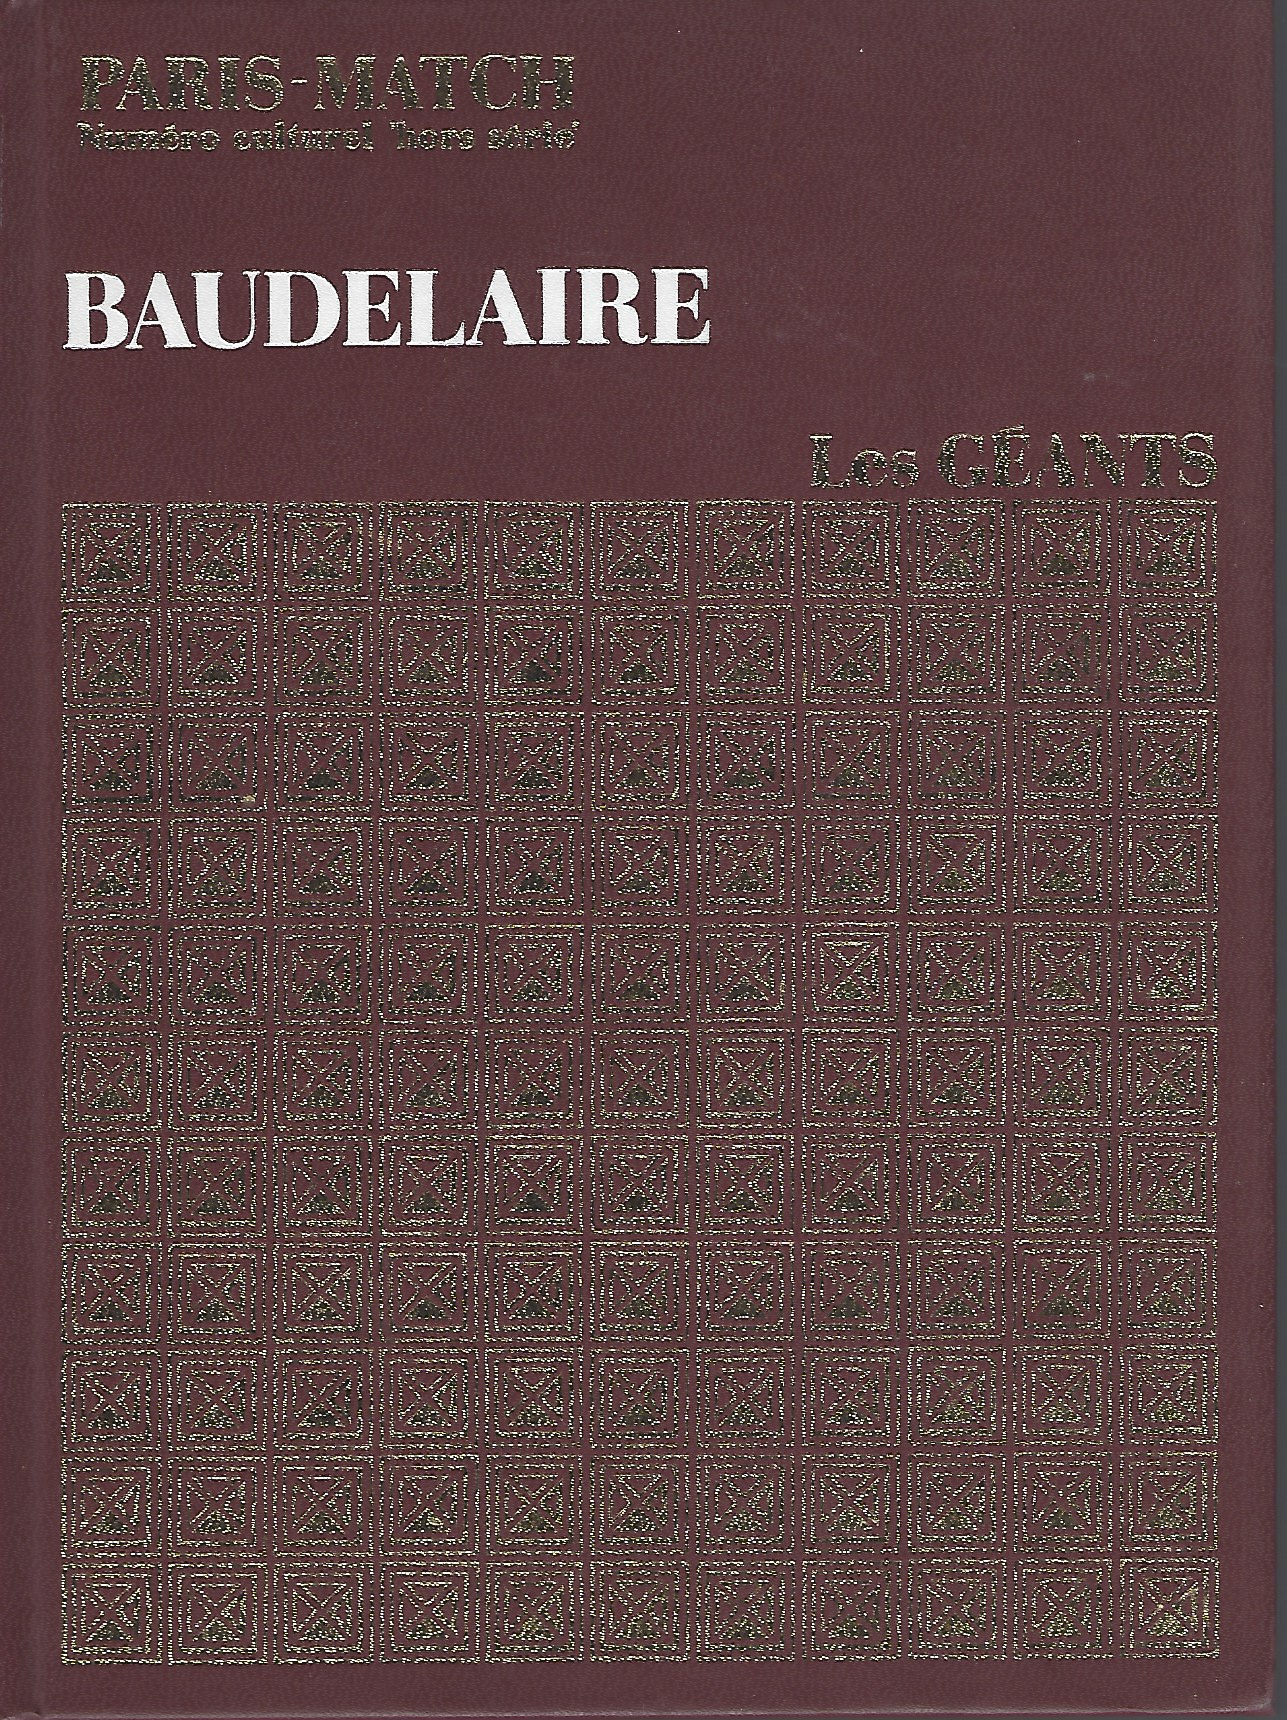 CHARRON PIERRE, EDITOR - Baudelaire, Les Geants